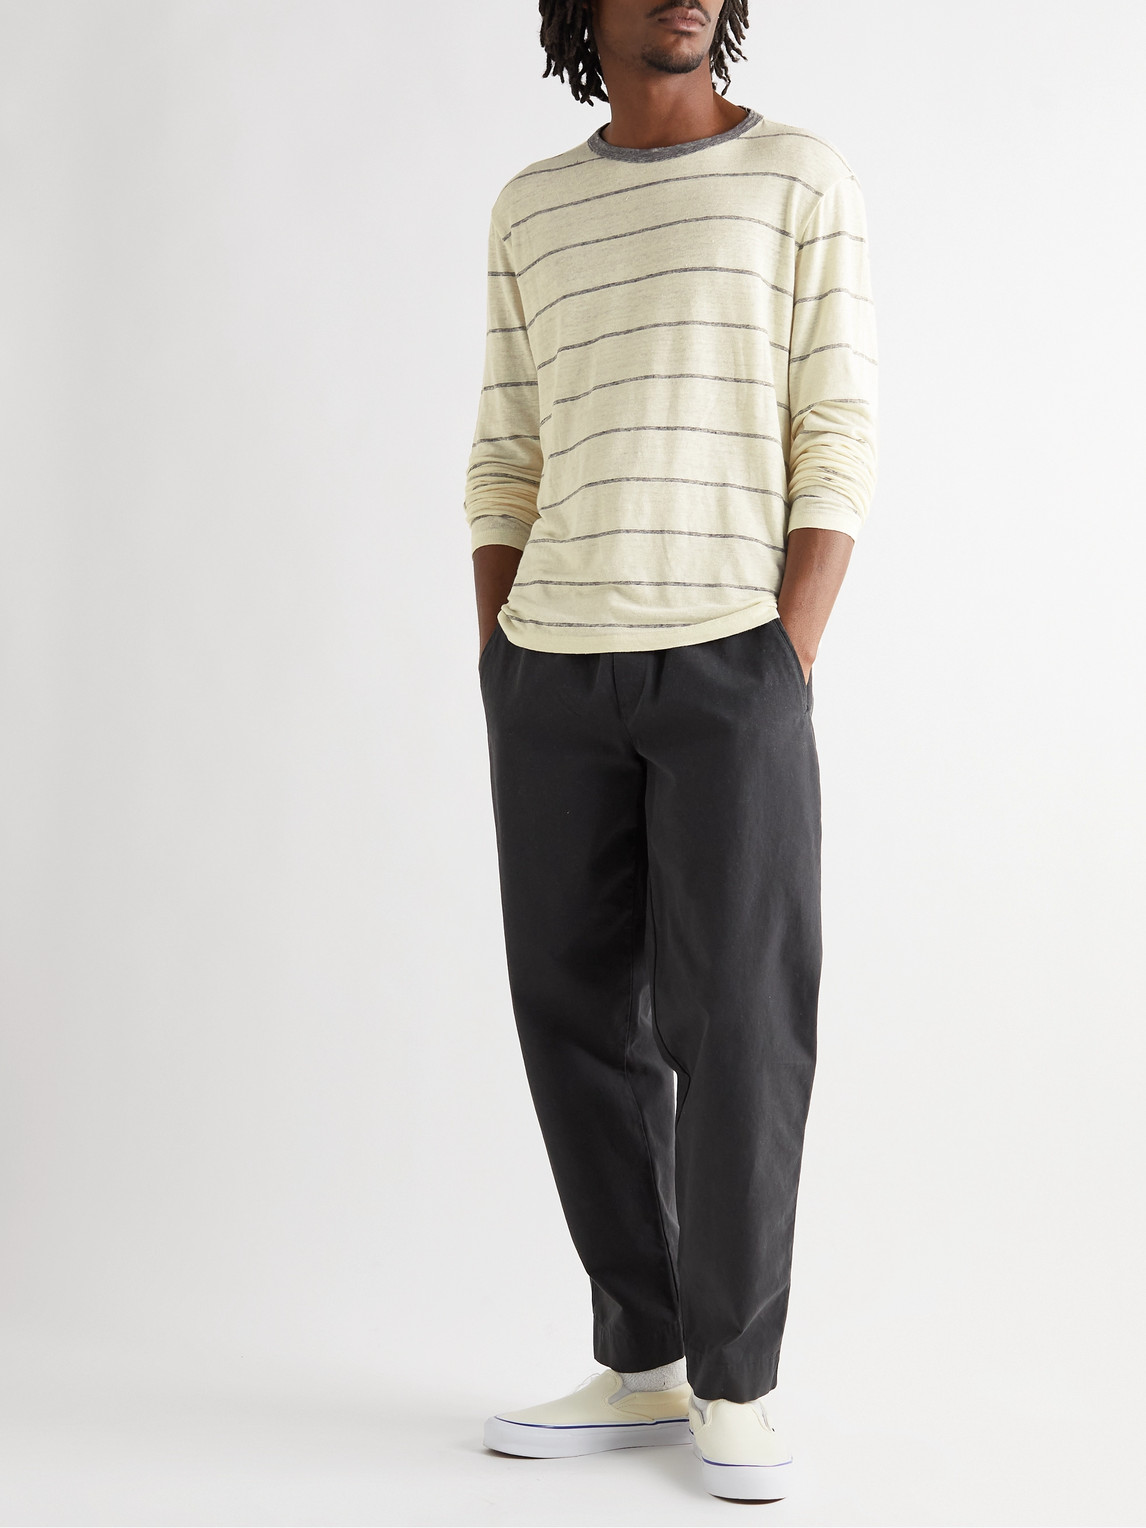 Officine Générale | Officine Générale - Striped Stretch-Linen T-Shirt - Men  - Neutrals - XS | Shoppingscanner